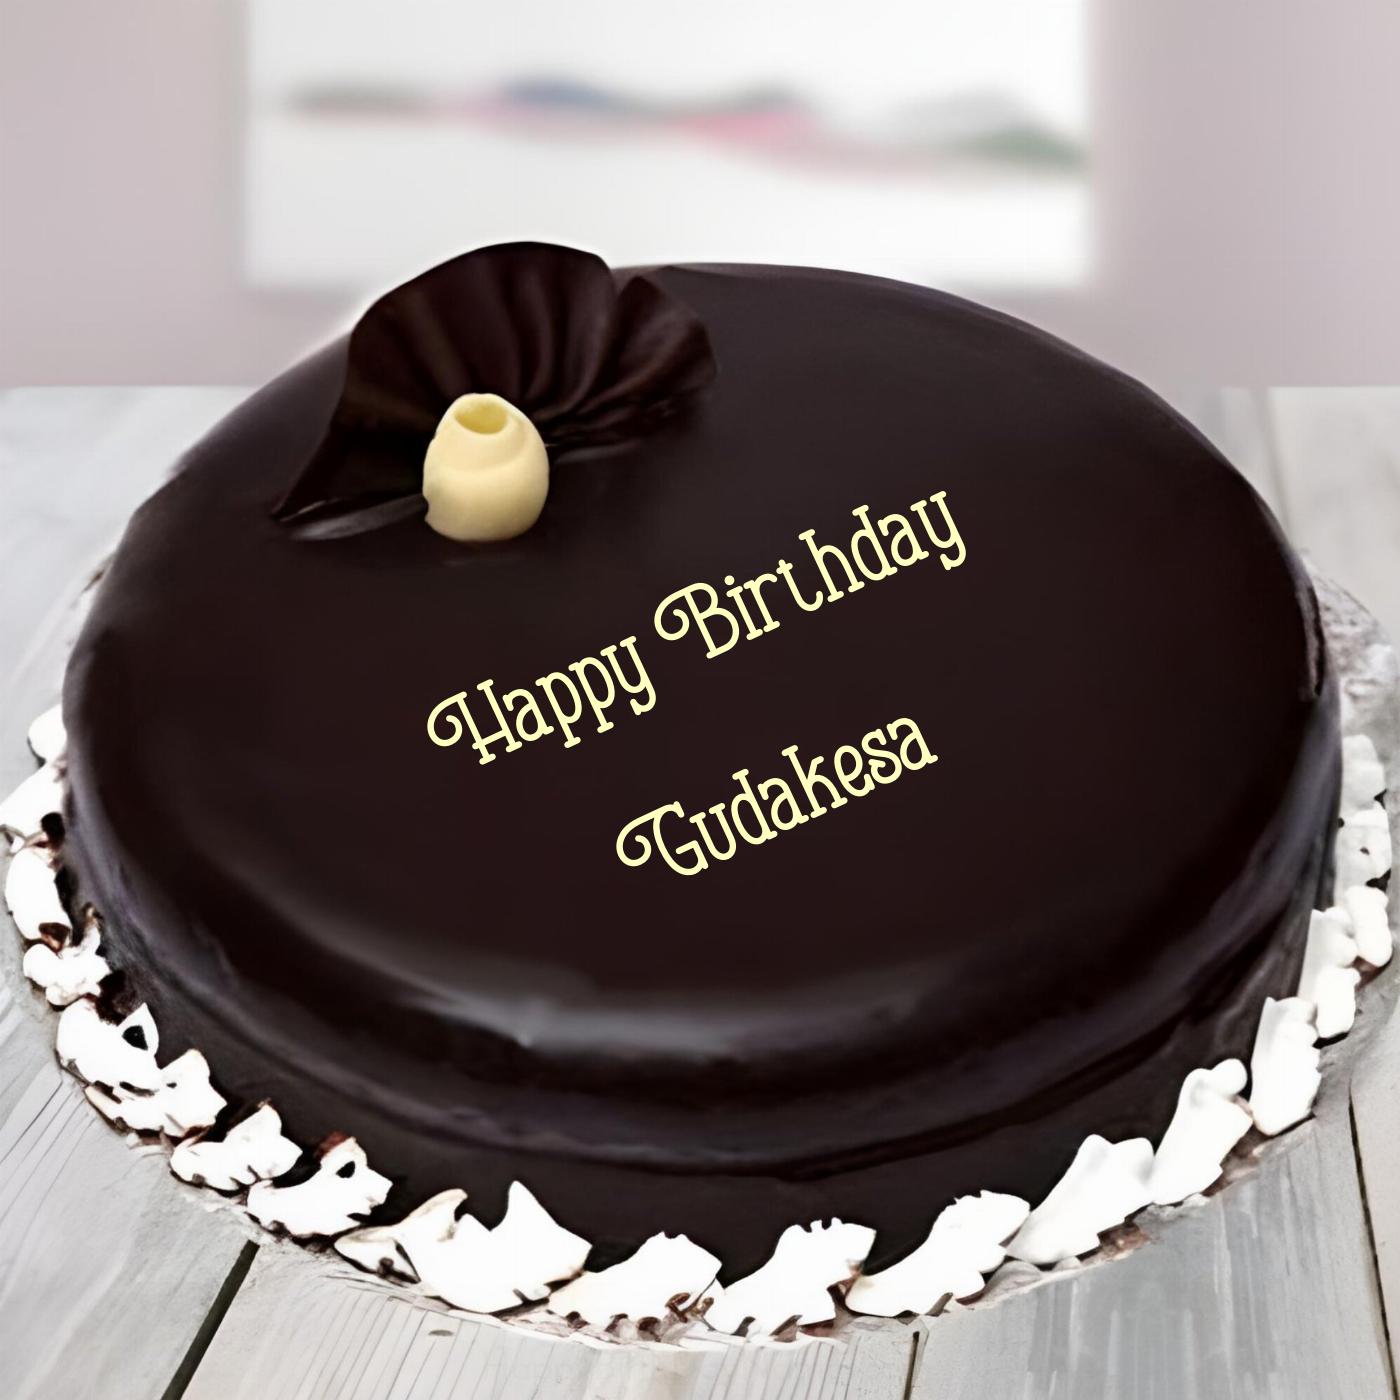 Happy Birthday Gudakesa Beautiful Chocolate Cake